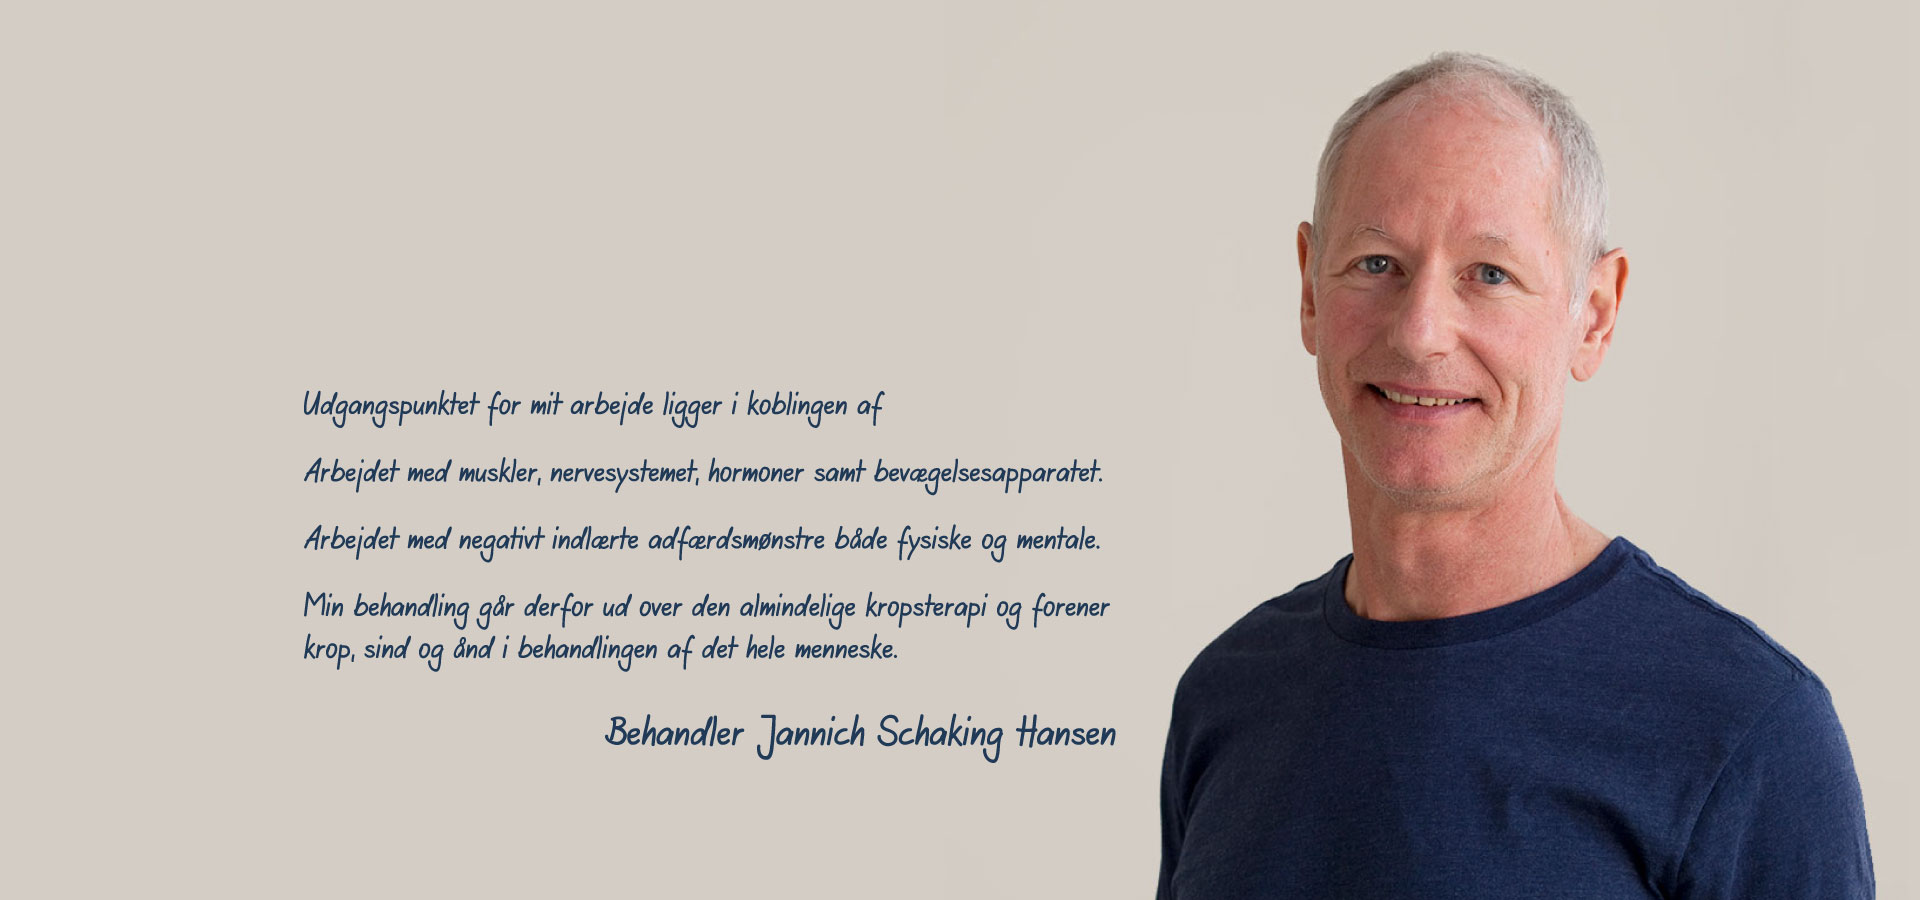 Jannich S Hansen bodyrestart behandler, behandlinger og træning